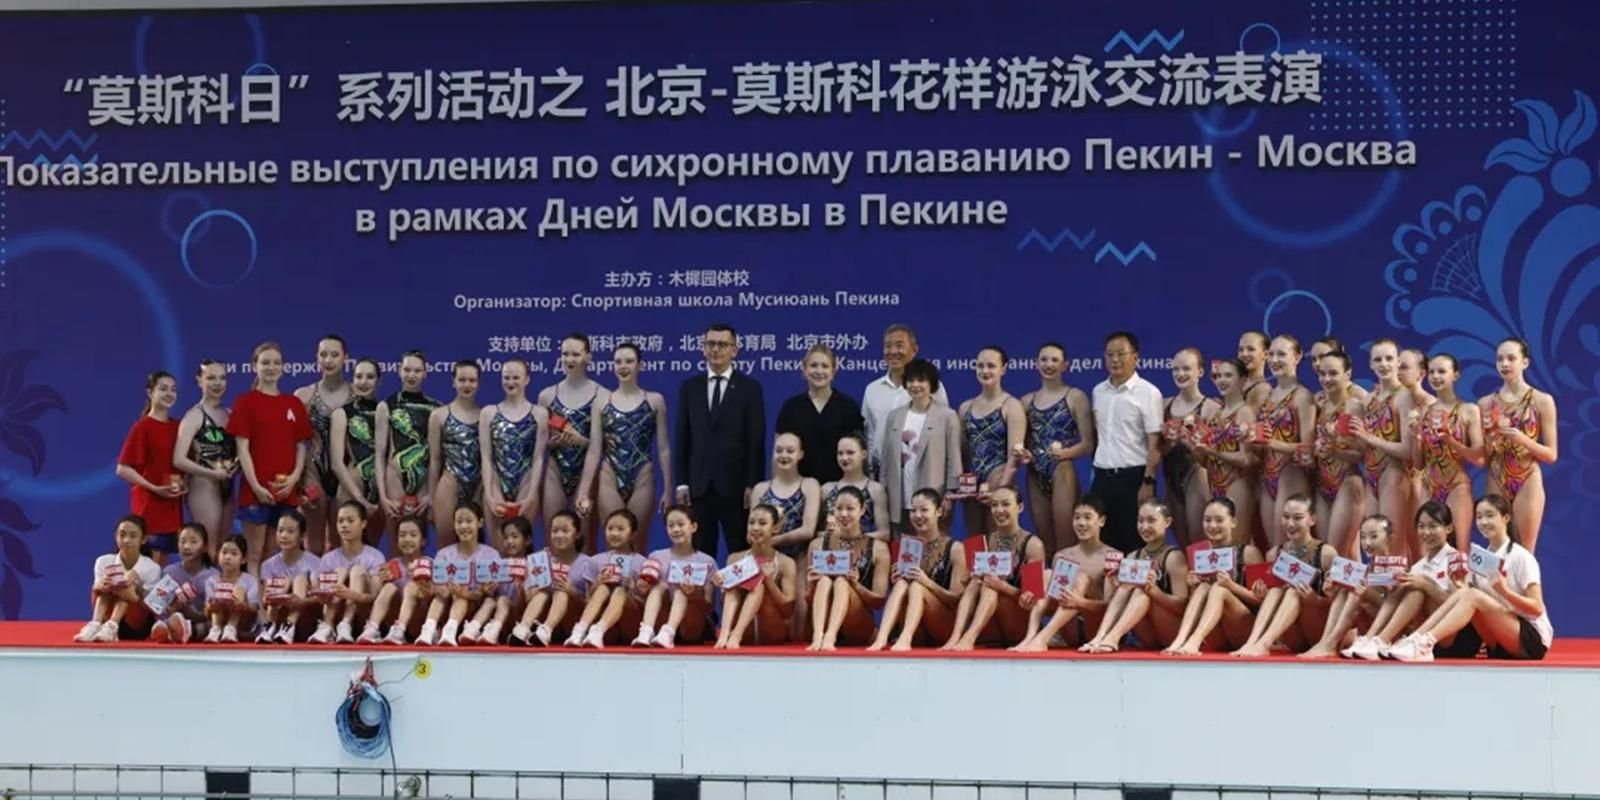 В Пекине прошла культурно-спортивная программа в рамках Дней Москвы